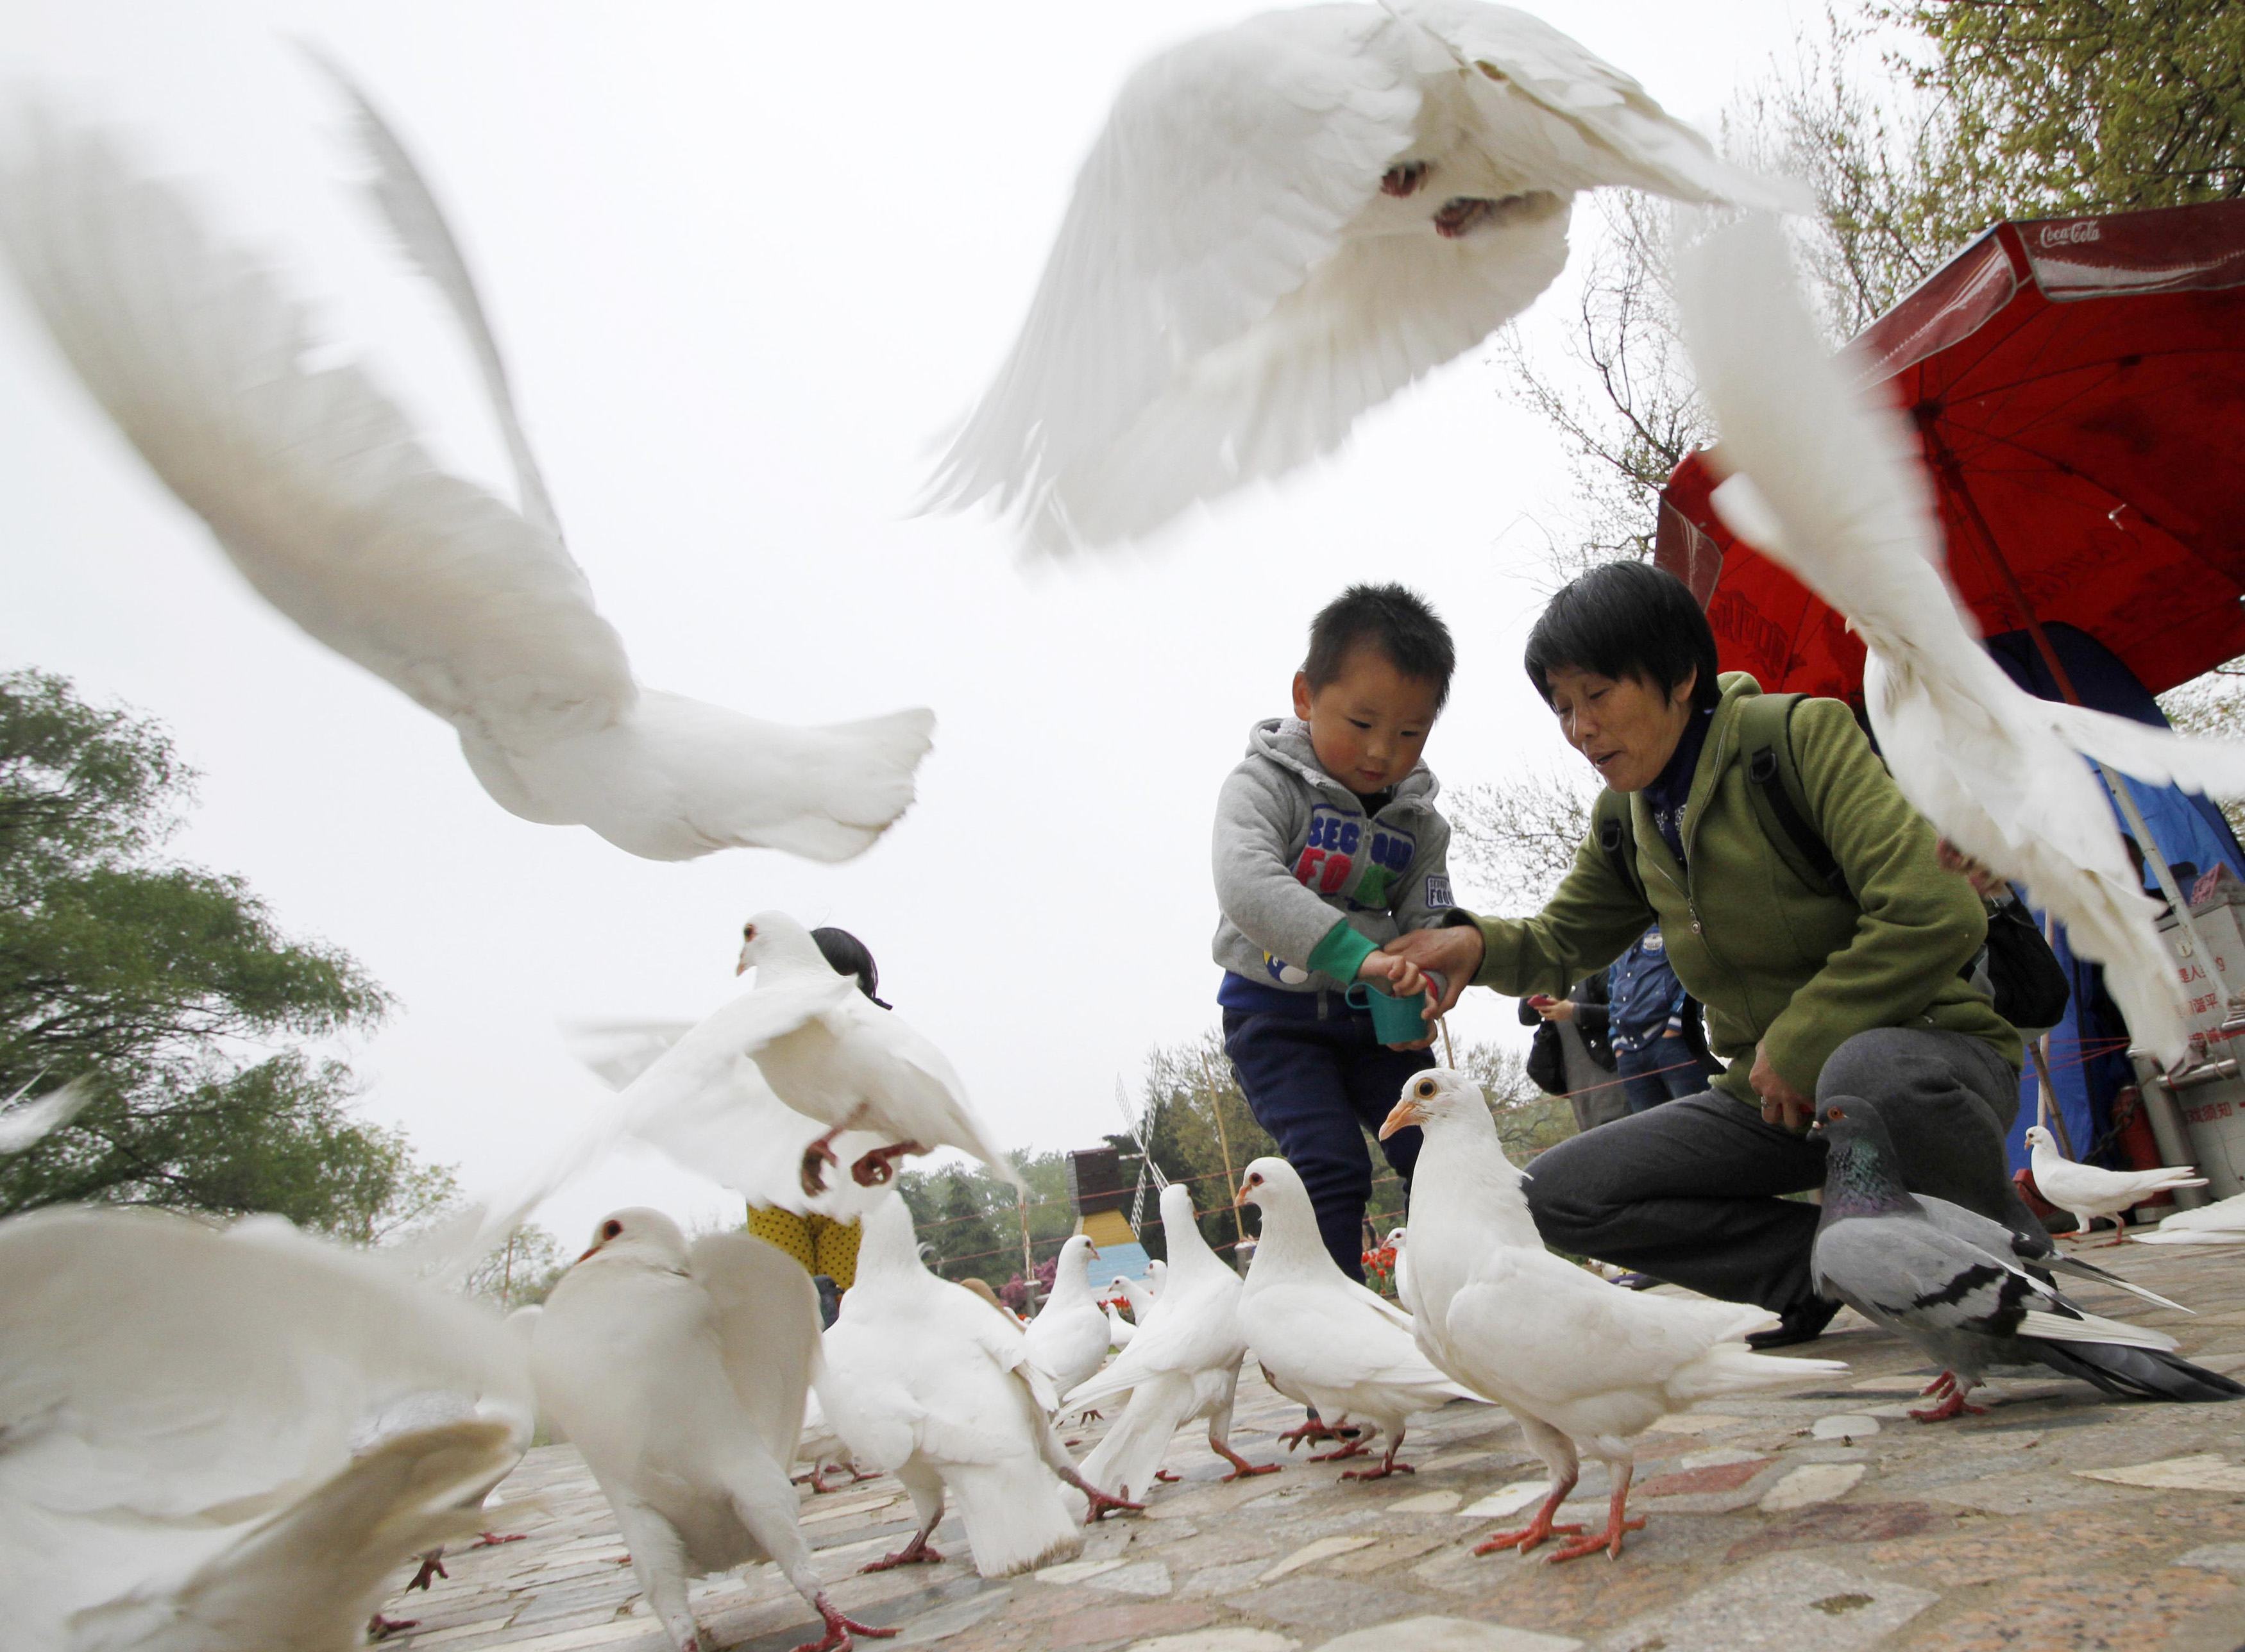 Κλειστά τα καταστήματα ζωντανών πουλερικών στη Σανγκάη